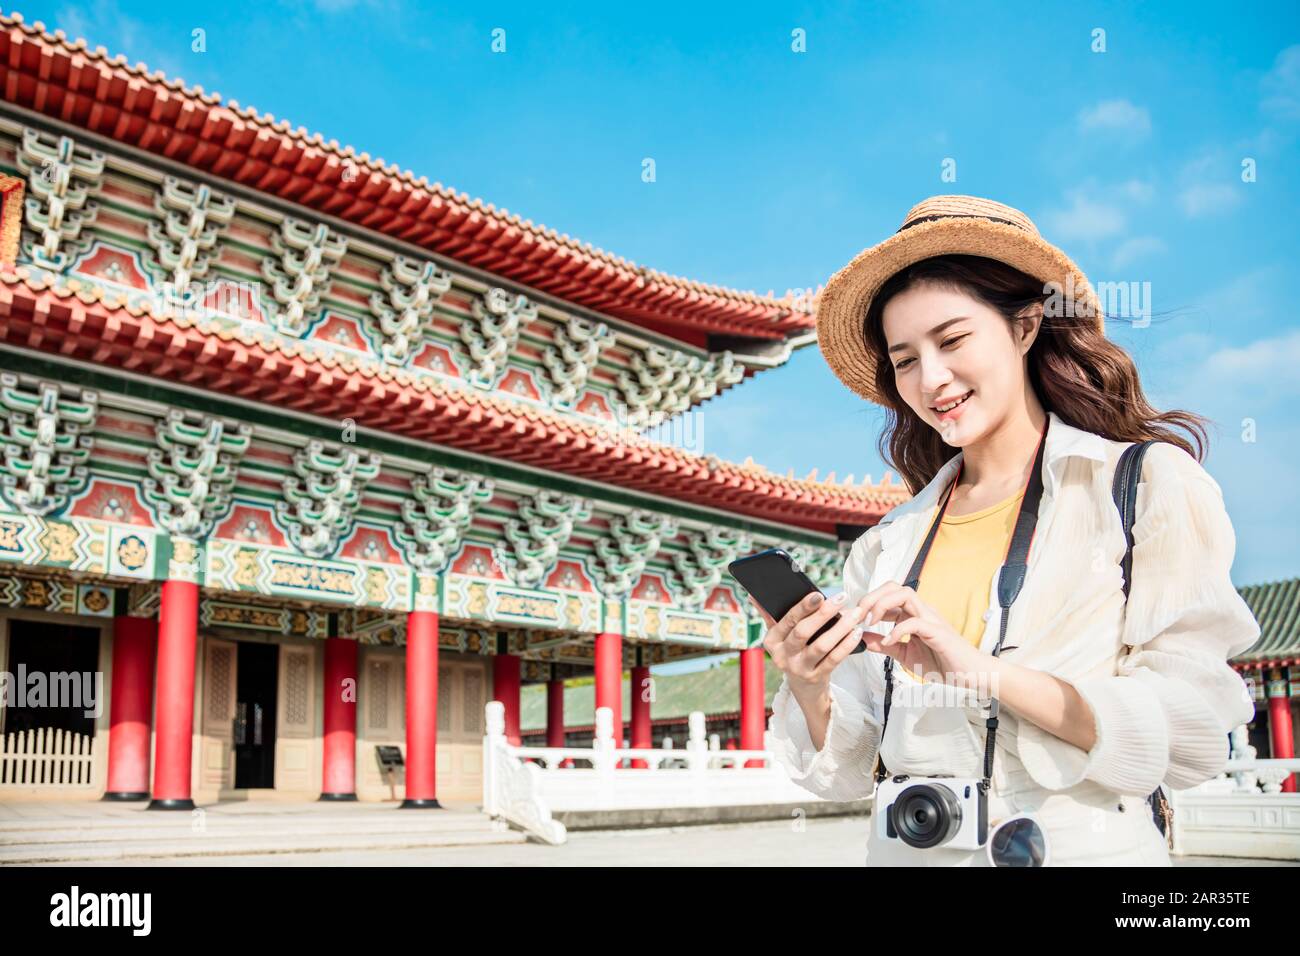 donna turistica con smartphone alla ricerca di informazioni di viaggio sul tempio Foto Stock